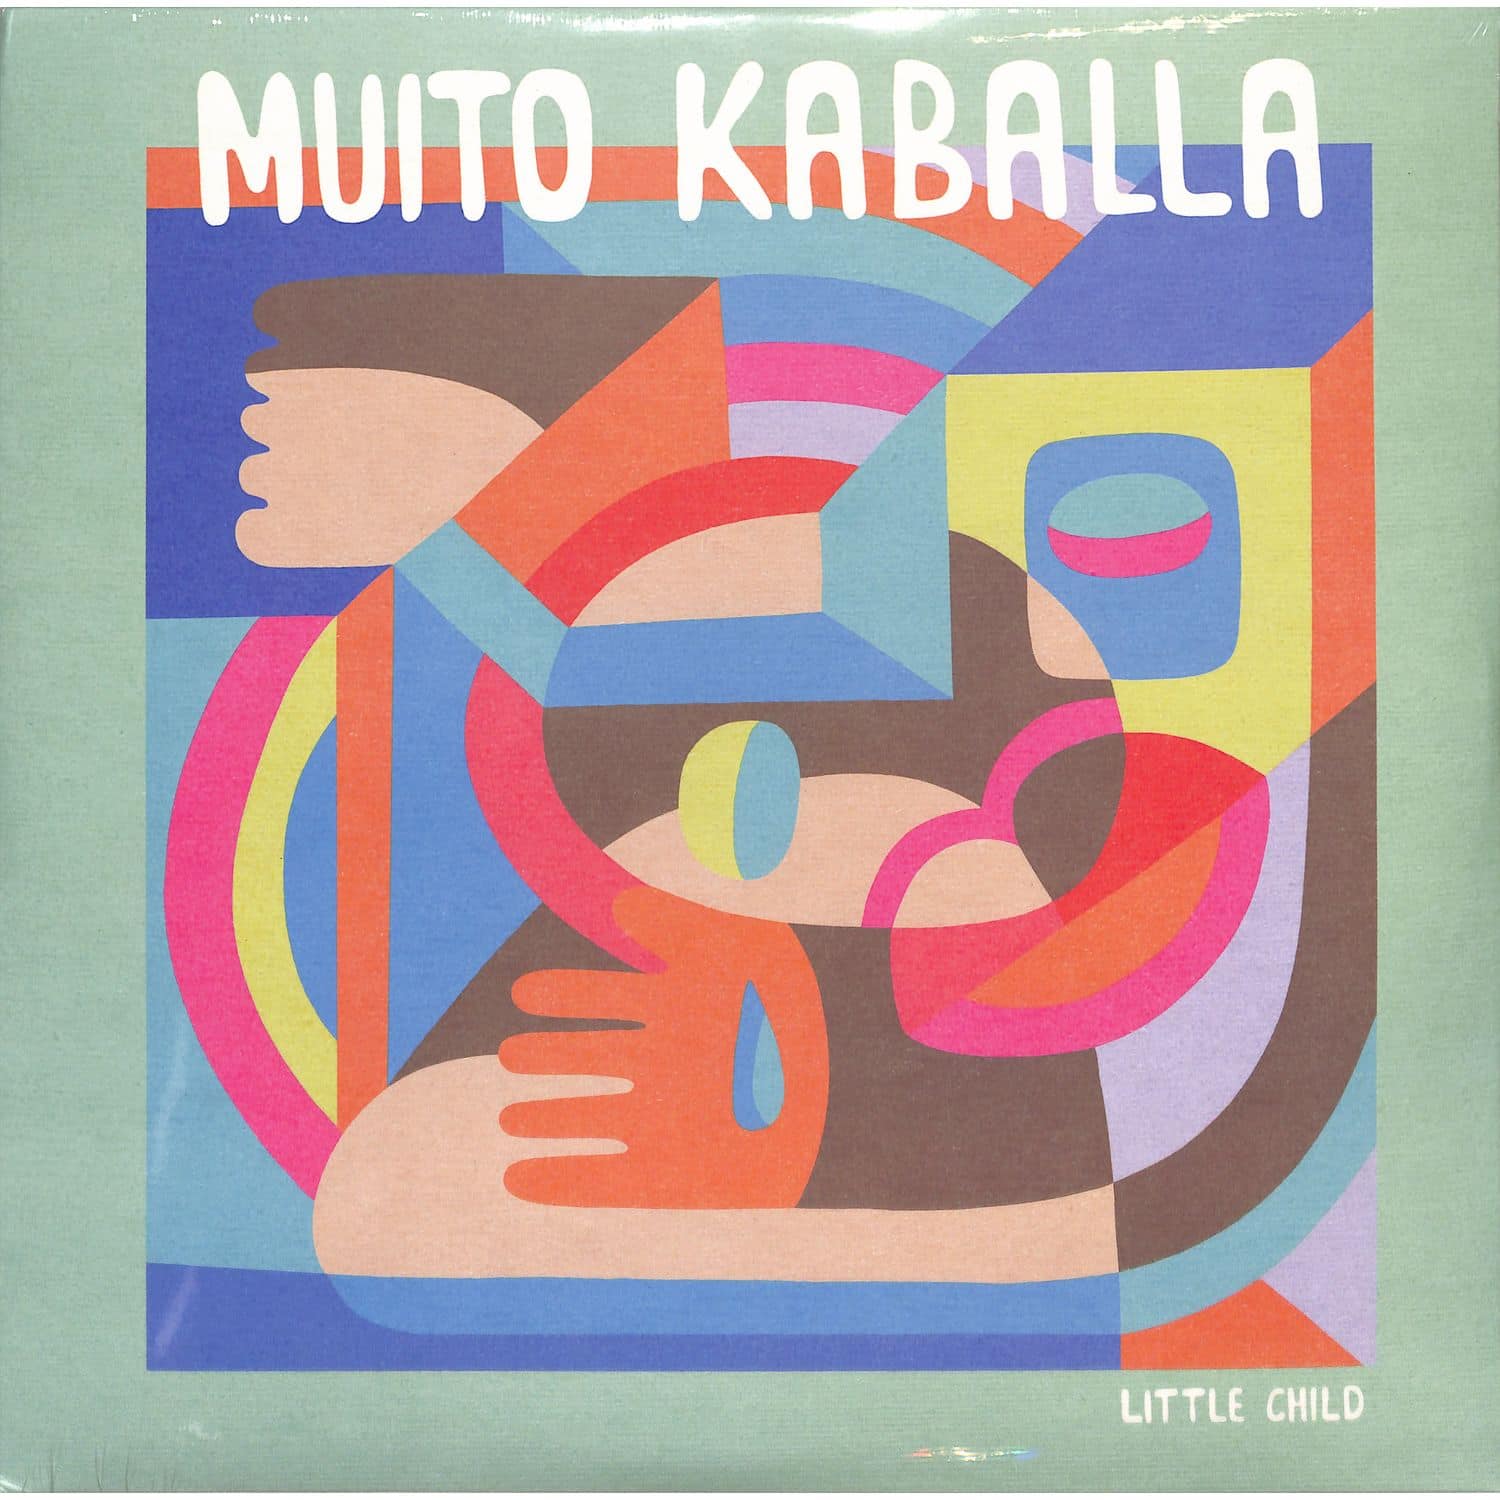 Muito Kaballa - LITTLE CHILD 